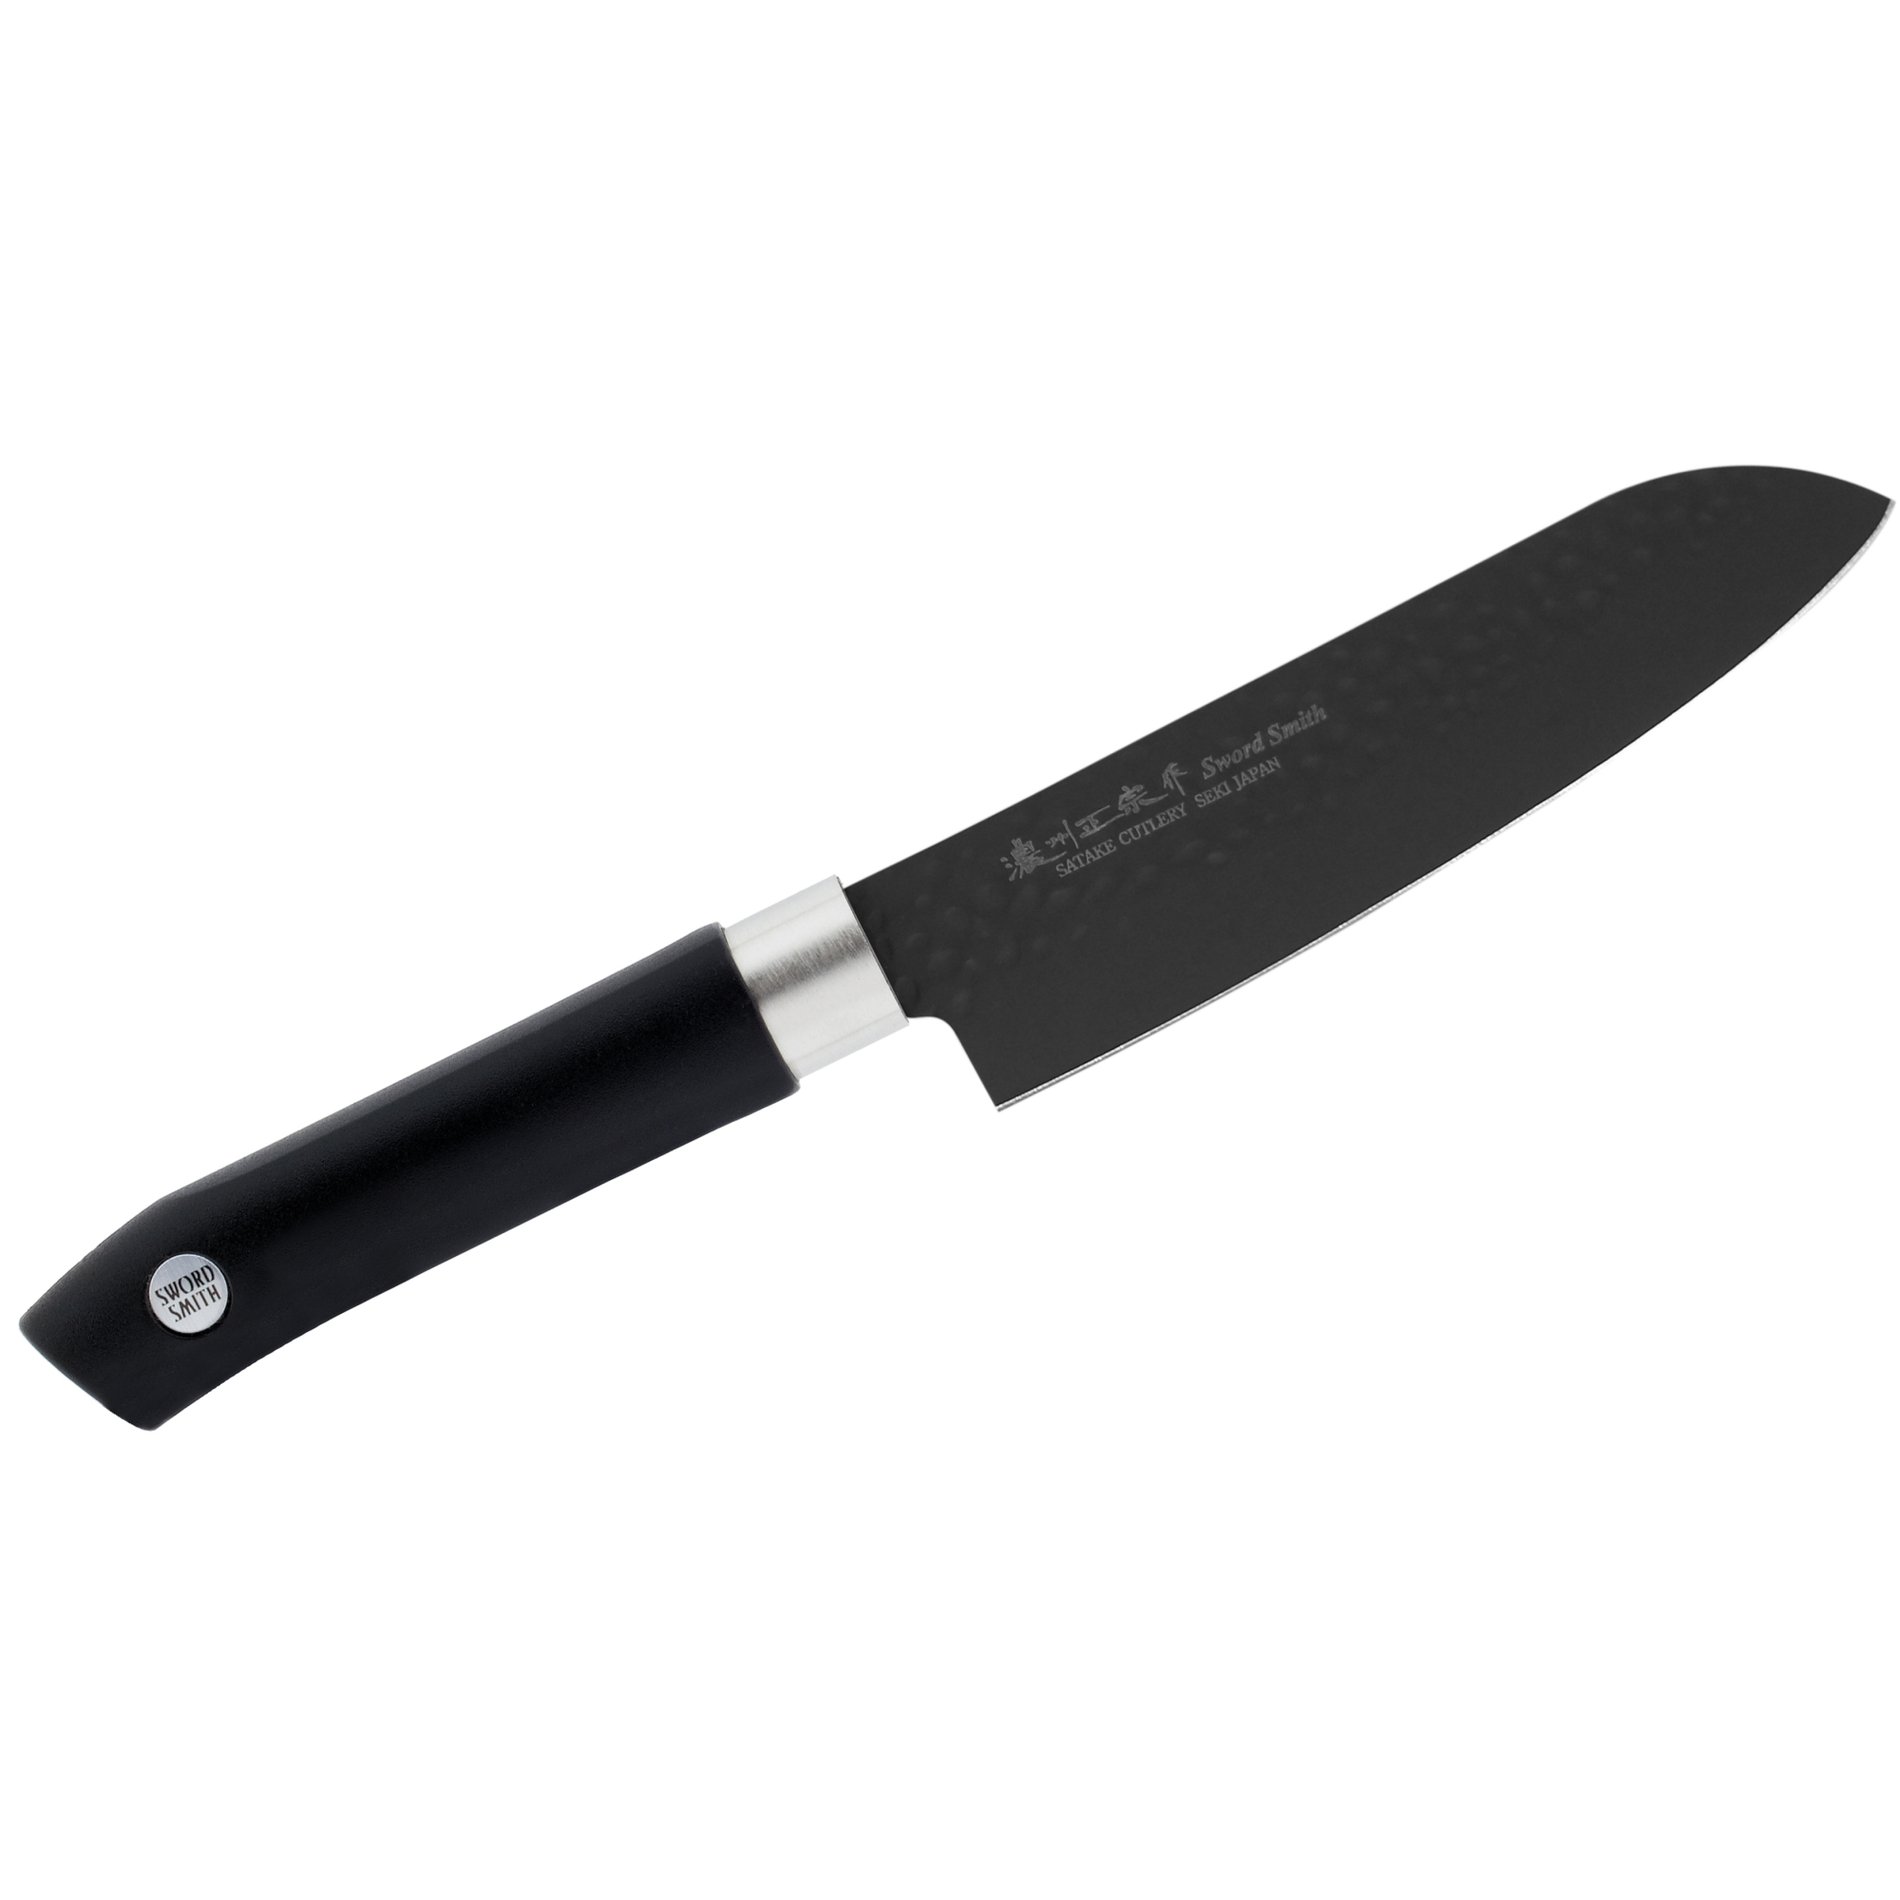 SATAKE Sword Smith Black 15 cm černý - nůž Santoku z nerezové oceli